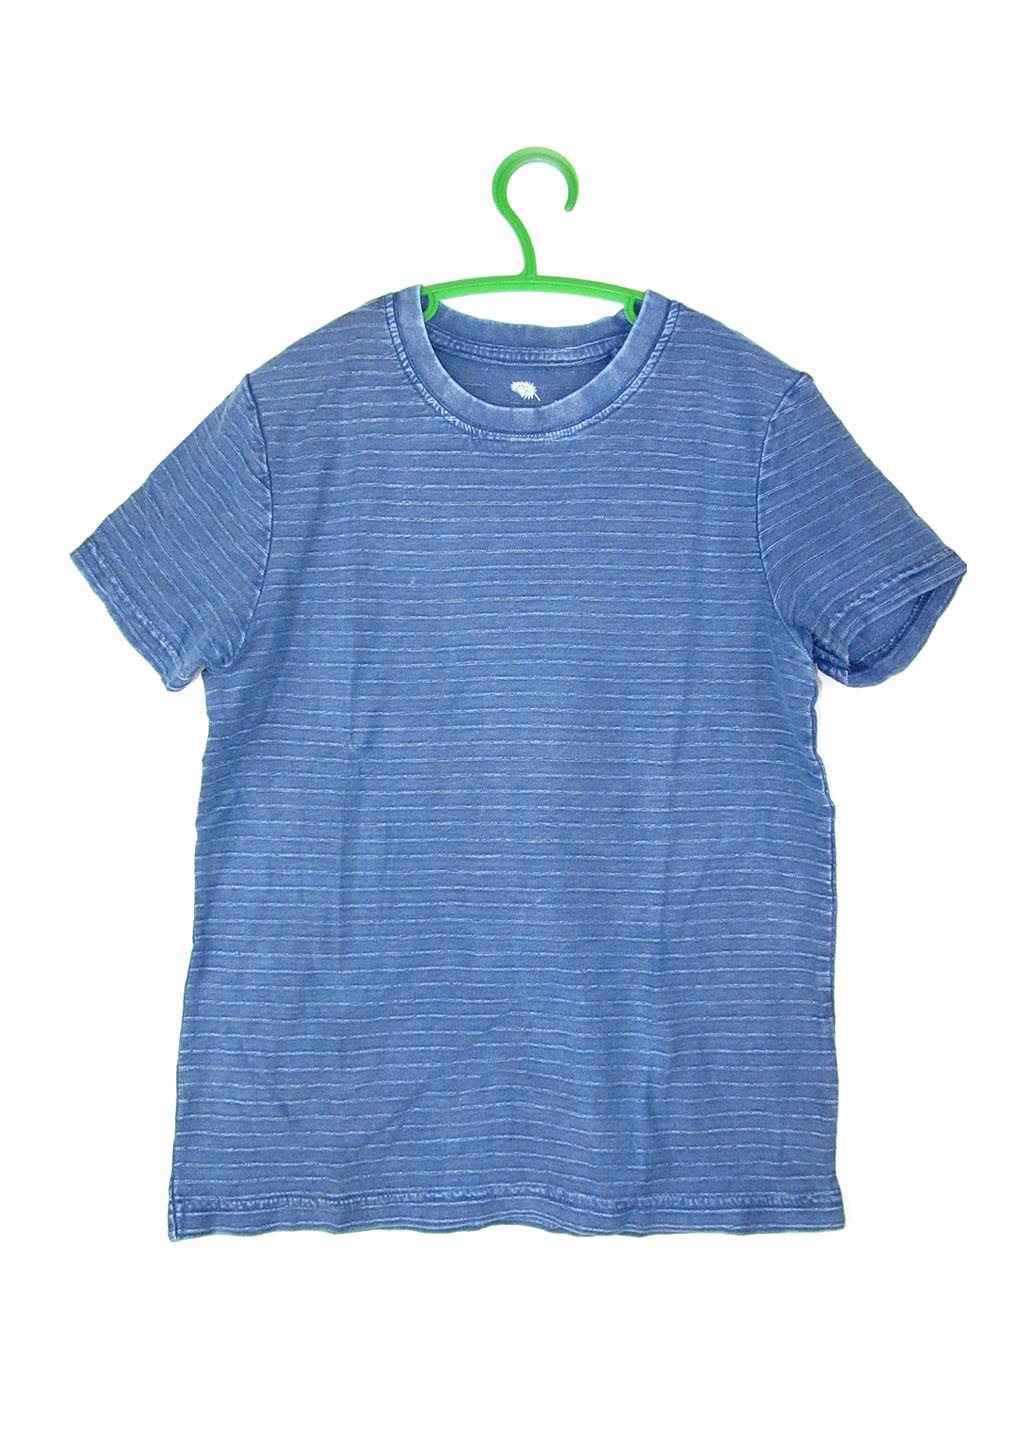 Голубая летняя футболка Pepperts